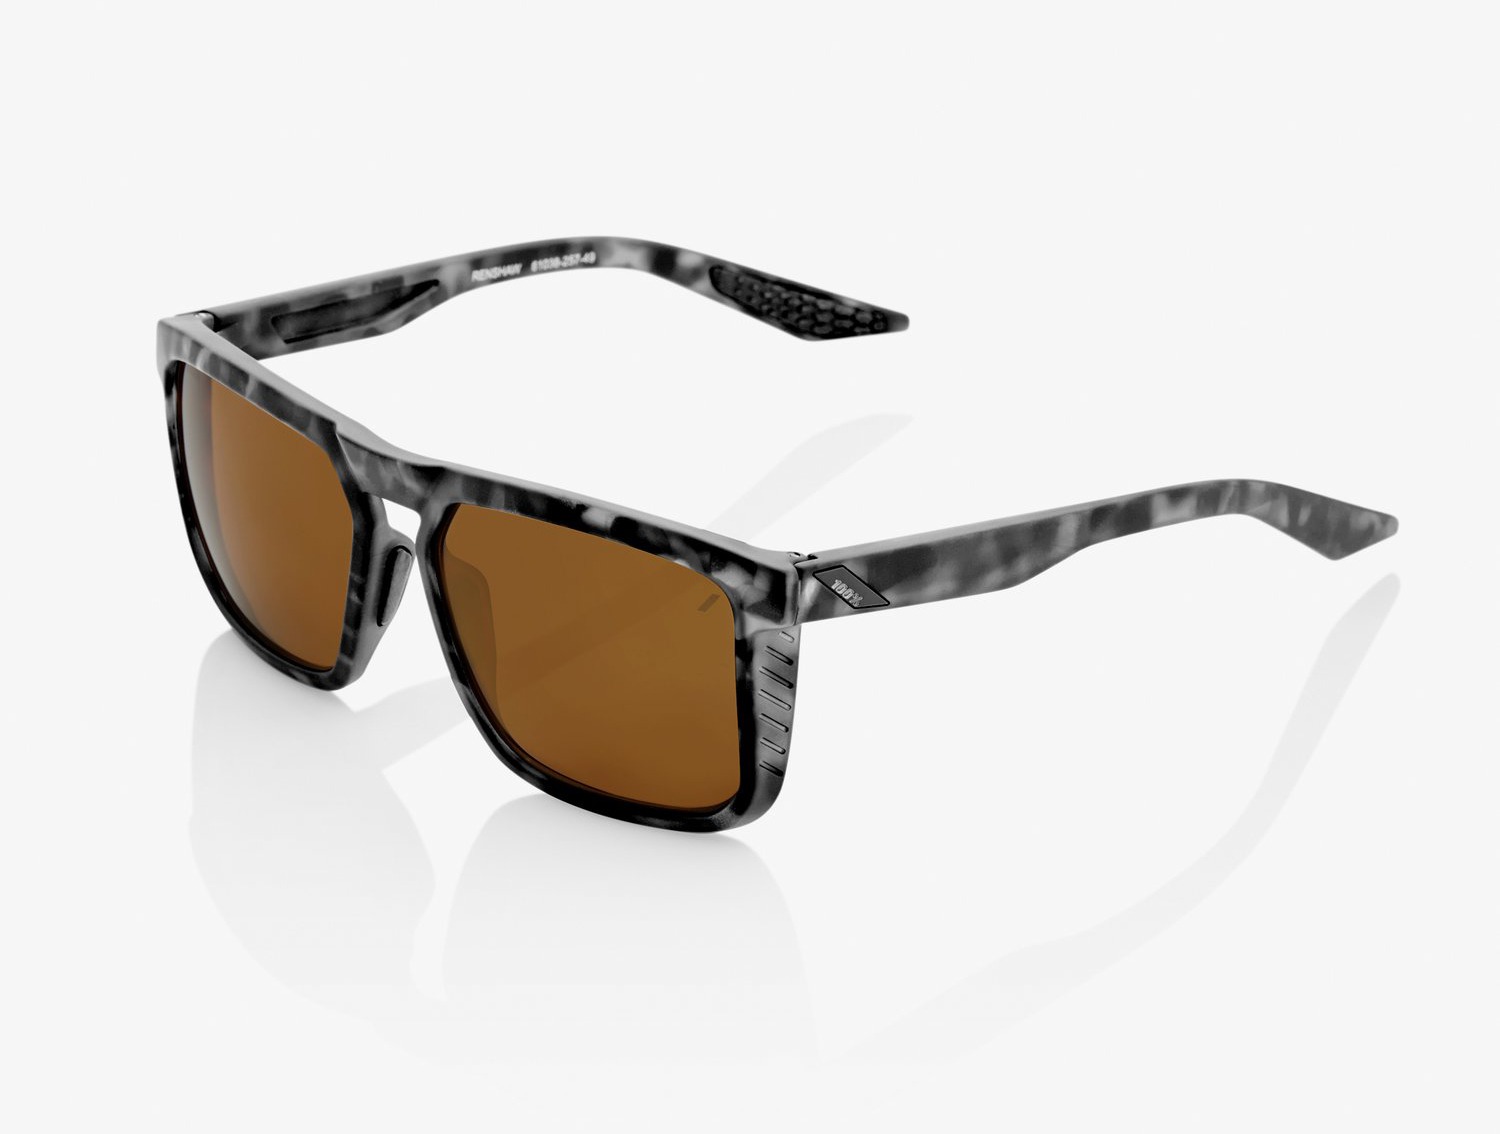 Obrázek produktu sluneční brýle RENSHAW, 100% (bronzové sklo) 60021-00002